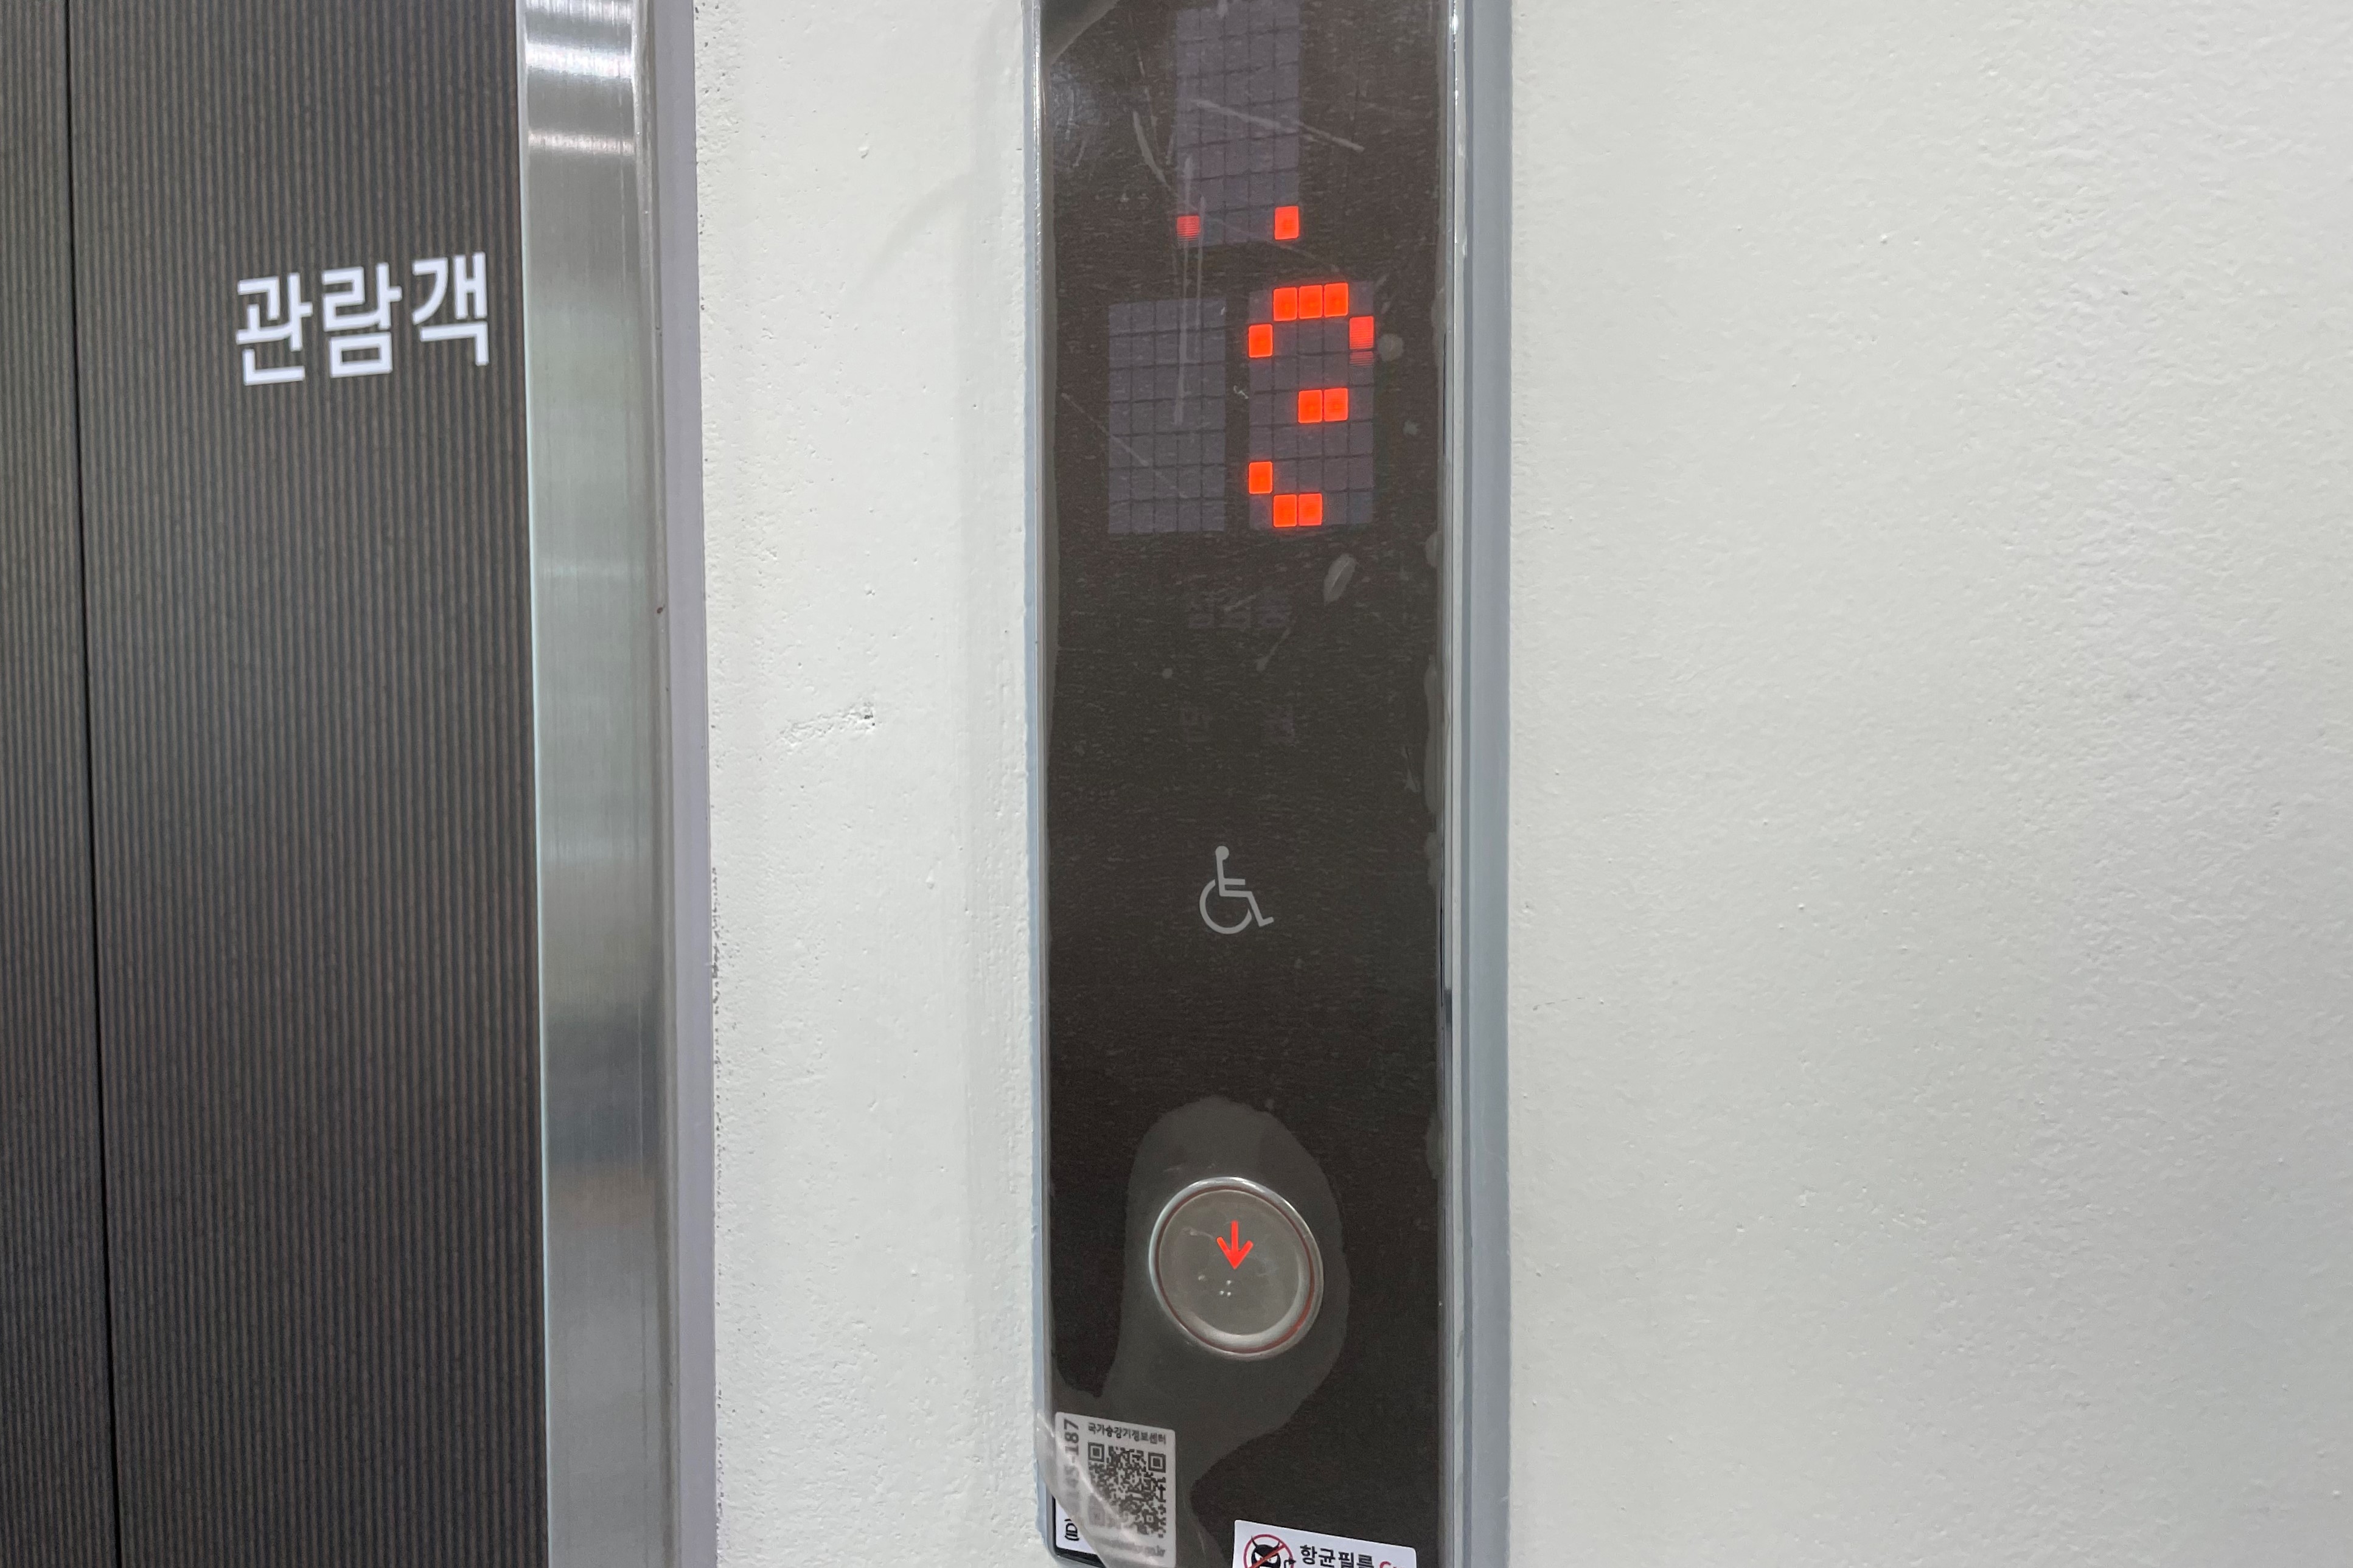 엘리베이터0 : 경찰박물관 엘리베이터 외부 점자 버튼